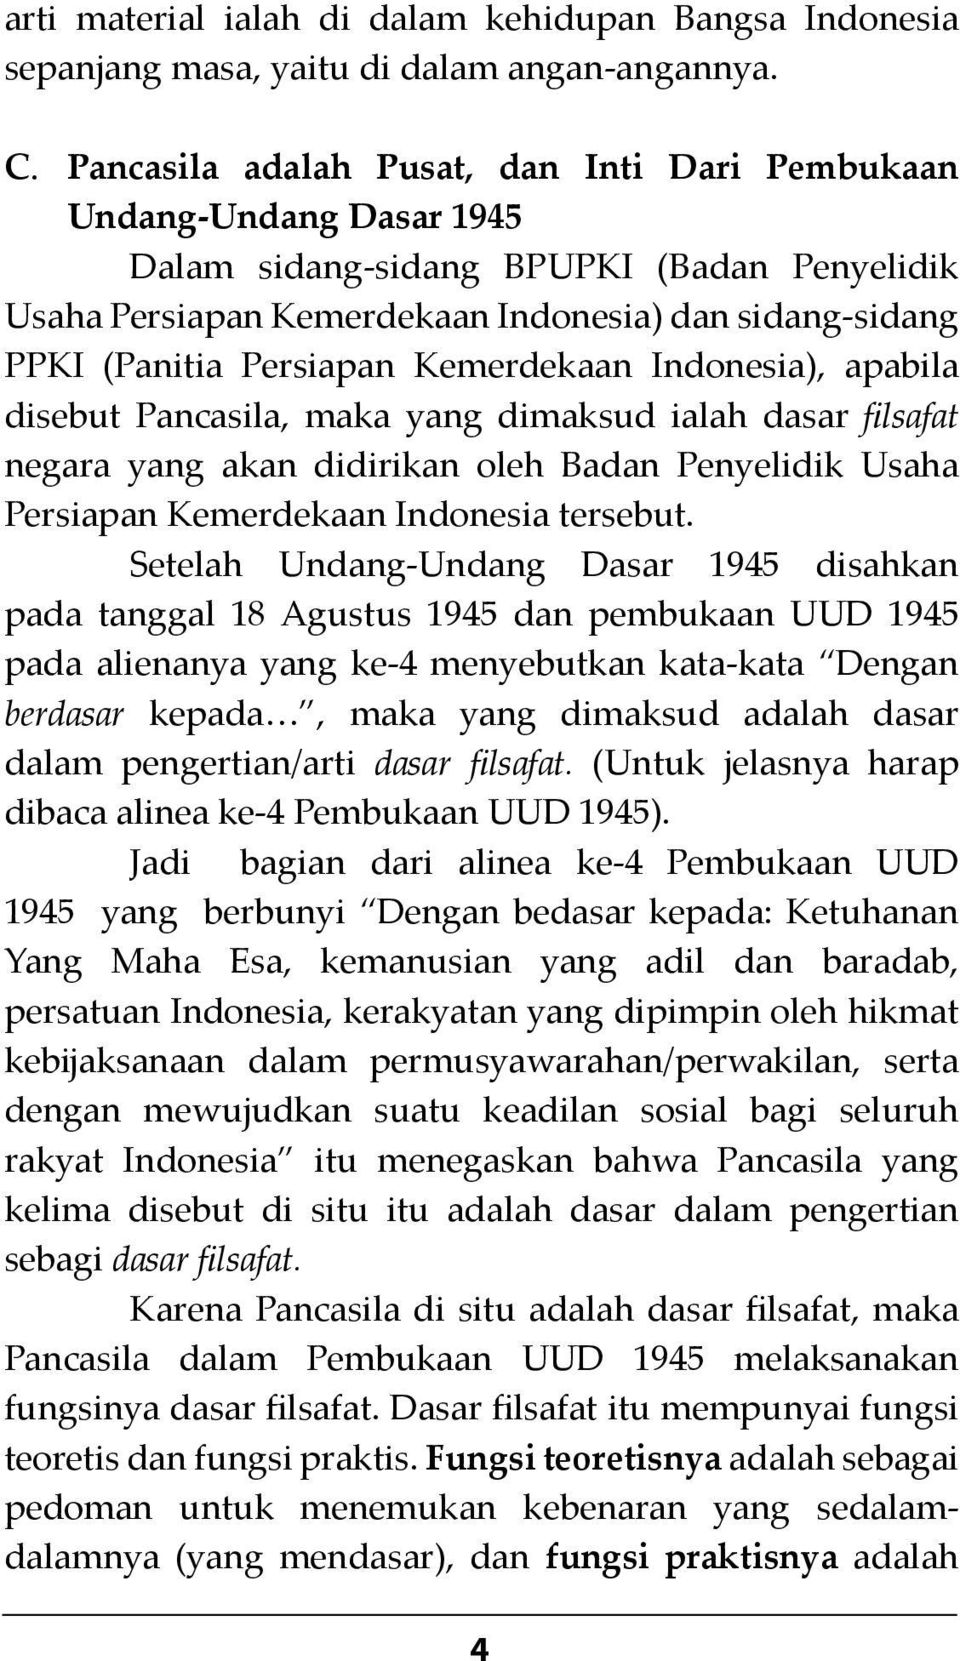 Kemerdekaan Indonesia), apabila disebut Pancasila, maka yang dimaksud ialah dasar filsafat negara yang akan didirikan oleh Badan Penyelidik Usaha Persiapan Kemerdekaan Indonesia tersebut.